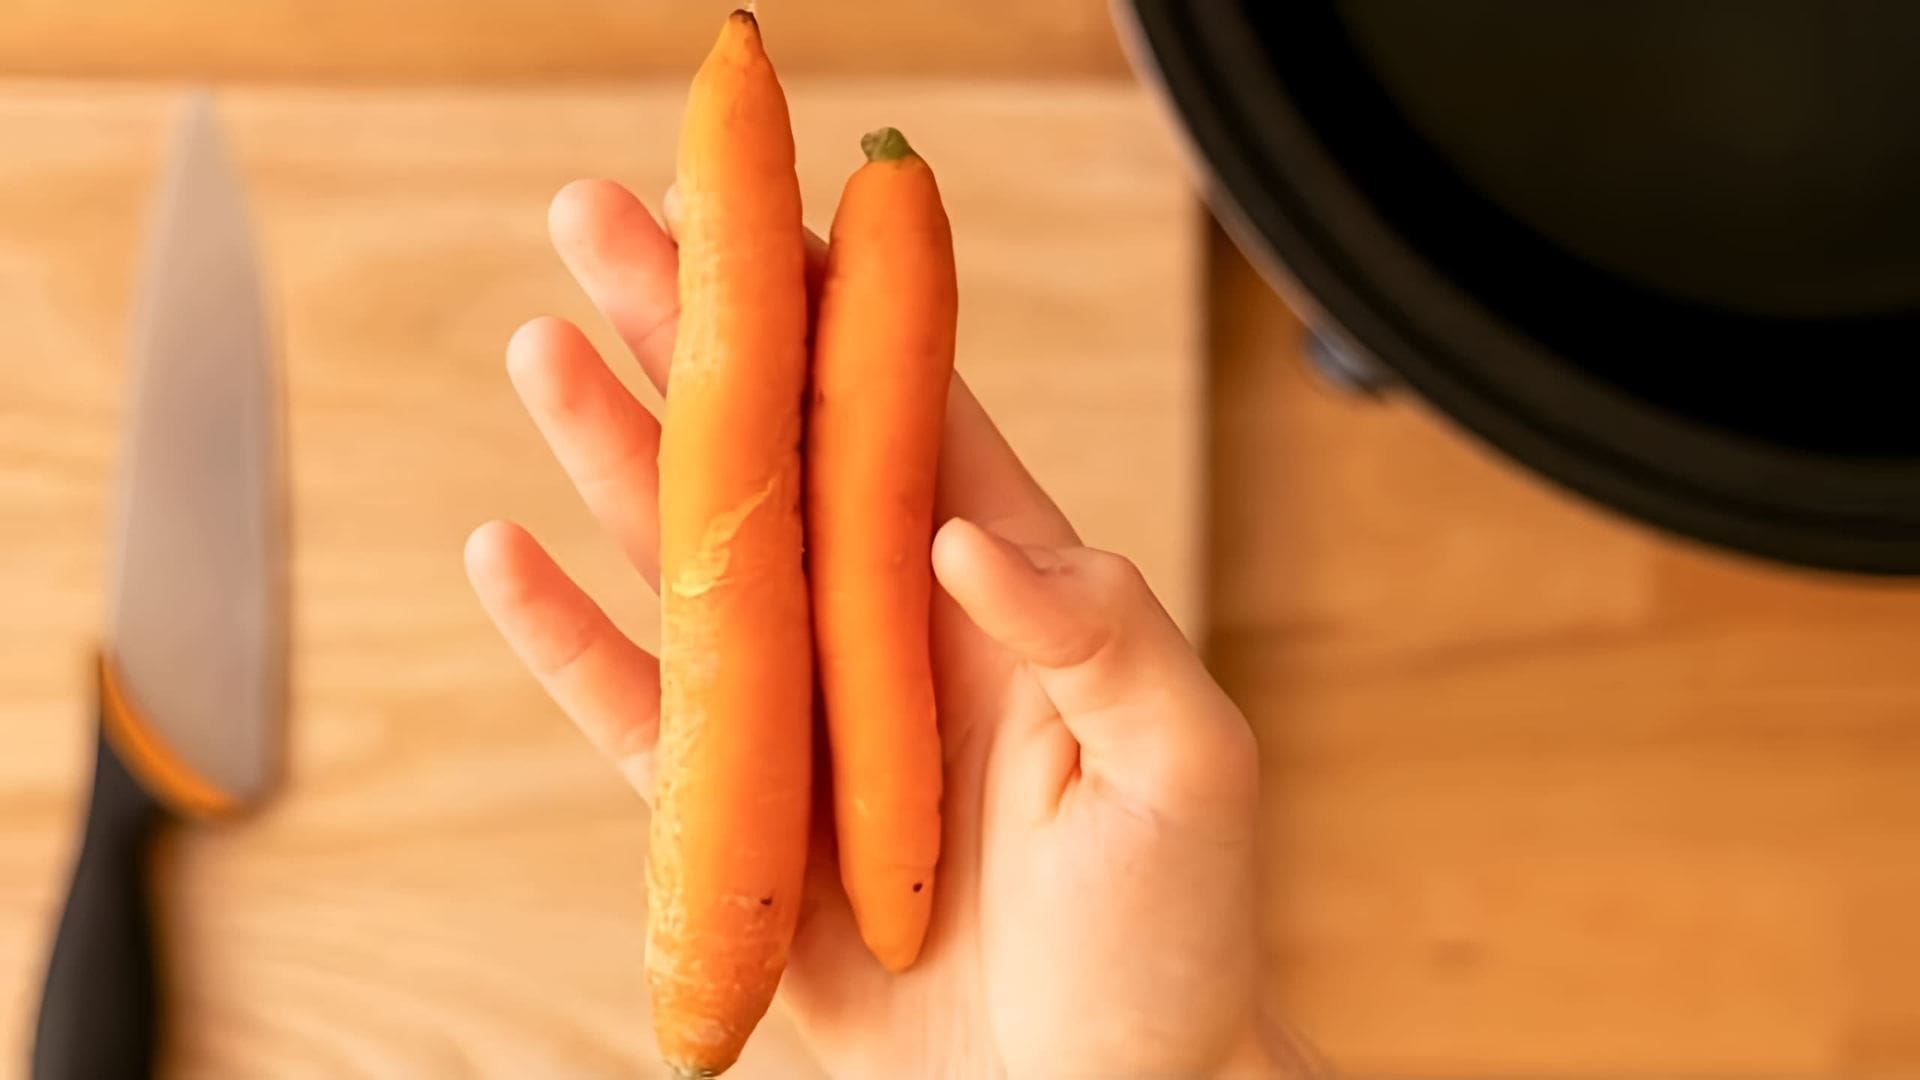 Если дома есть только морковка, то можно приготовить вкусный и полезный рецепт за копейки